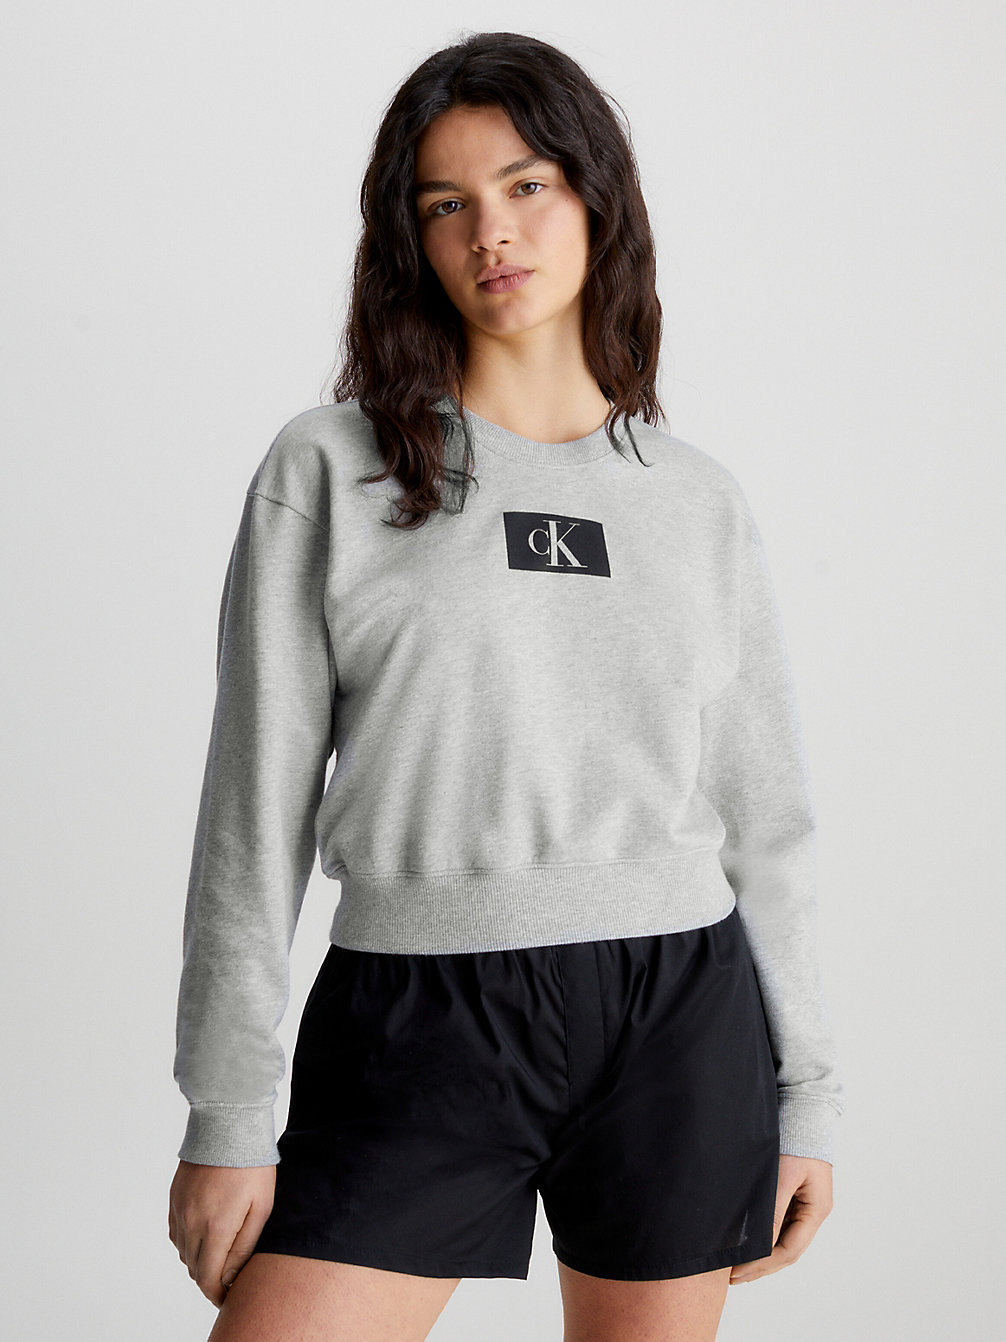 GREY HEATHER Lounge Sweatshirt - Ck96 undefined dames Calvin Klein